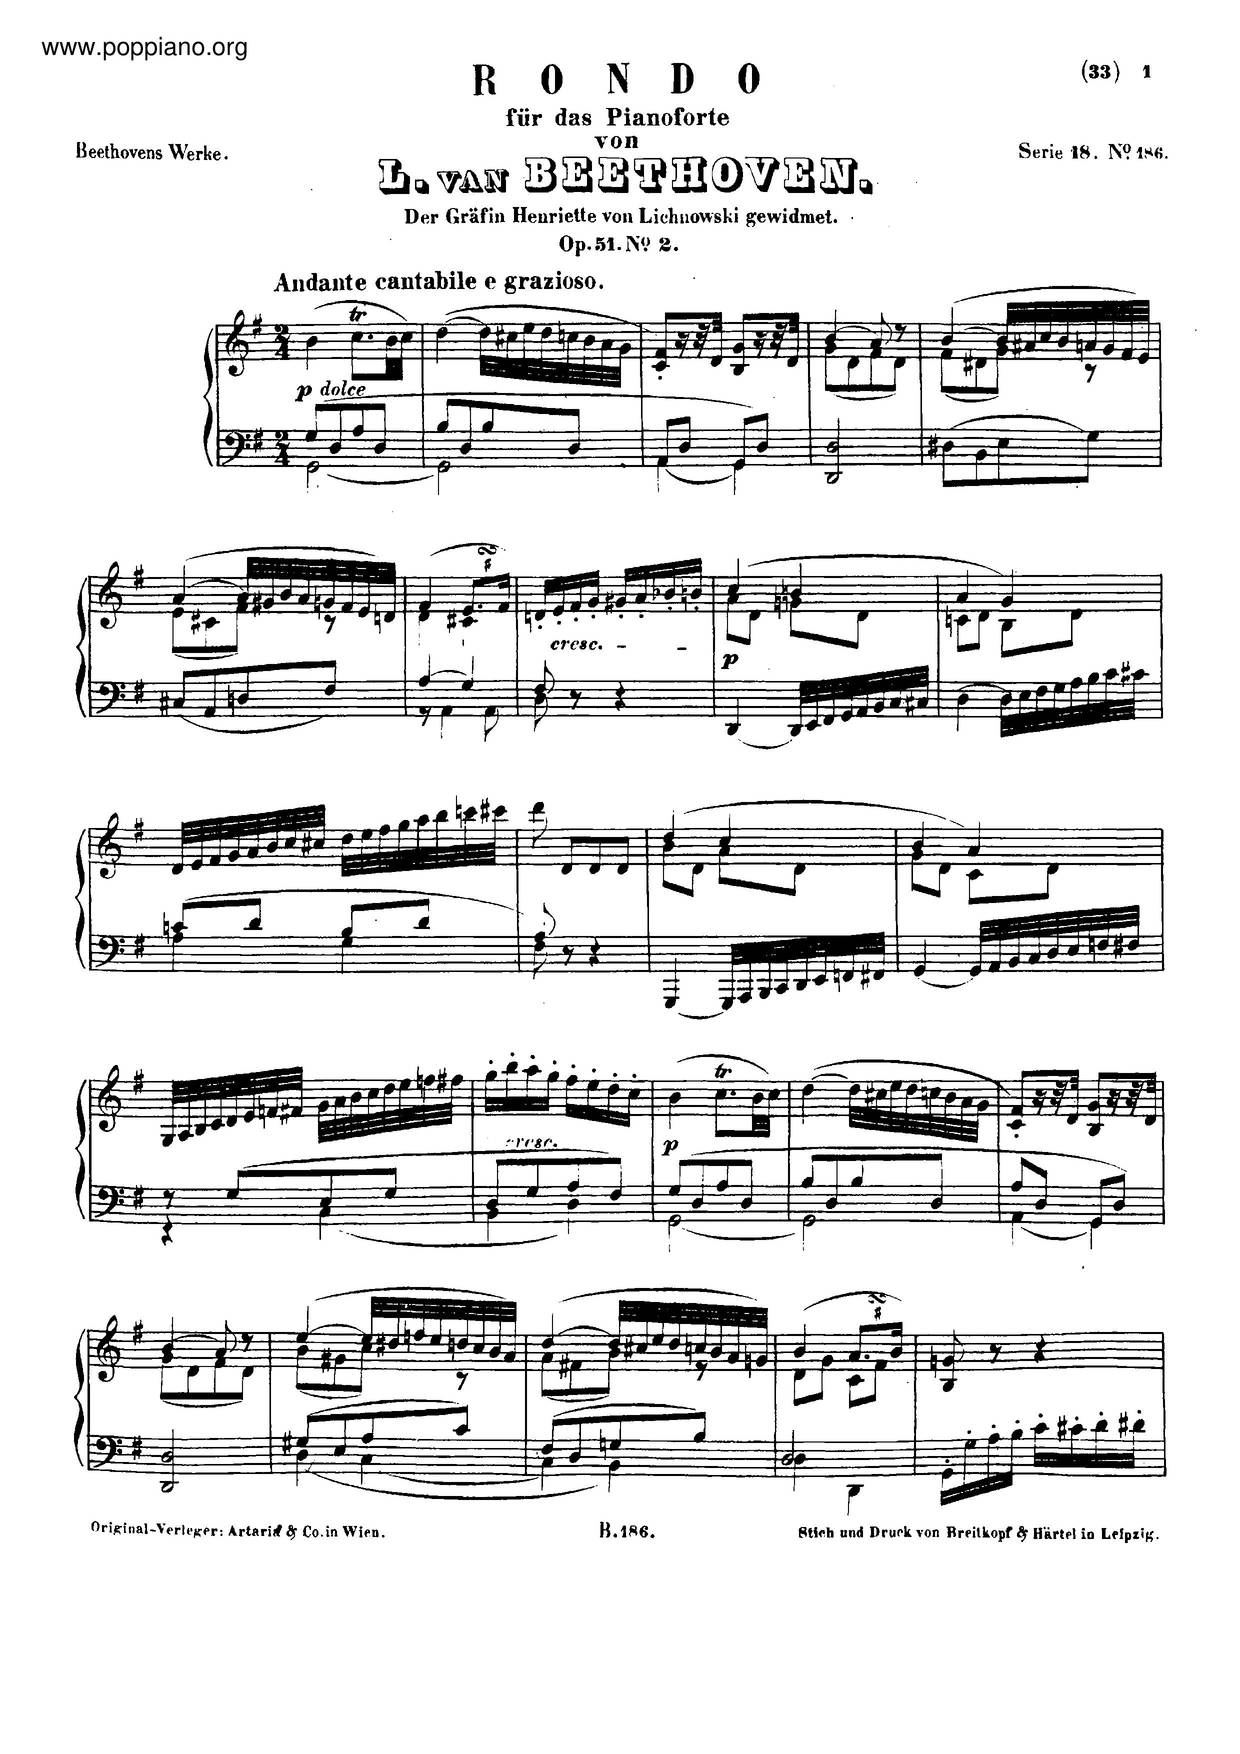 2 Rondos, Op. 51 Score